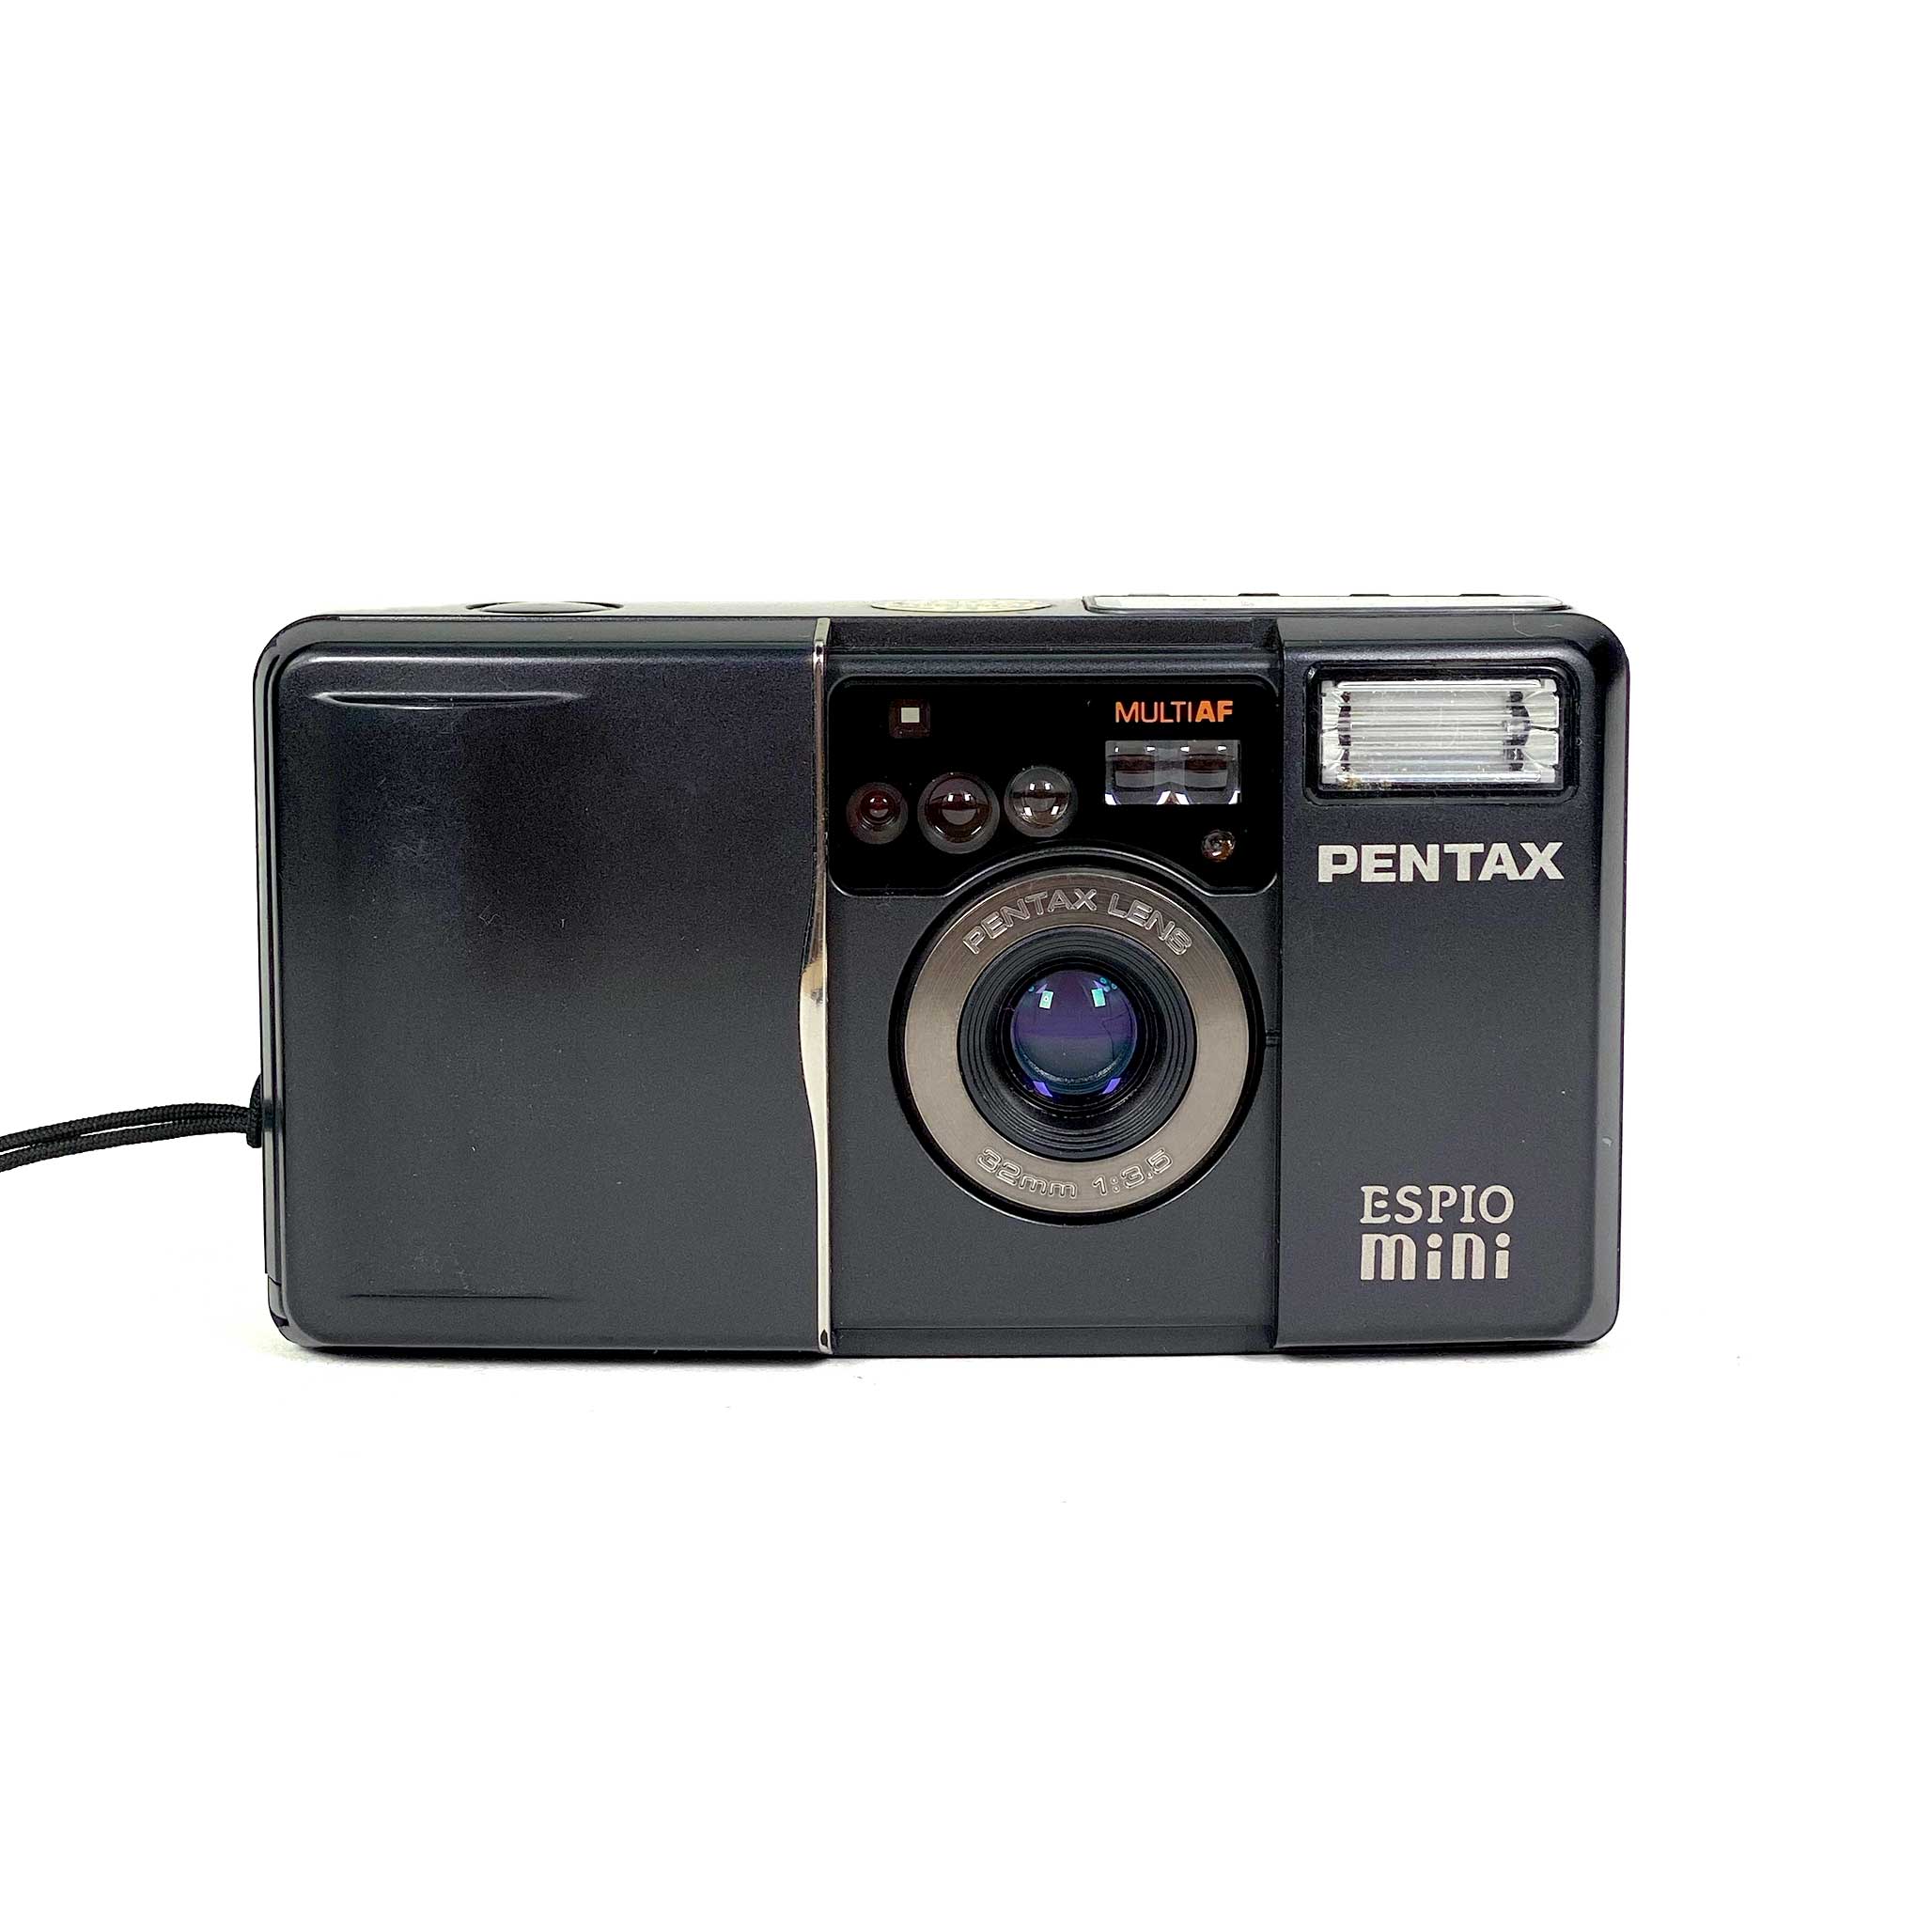 PENTAX ESPIO mini コンパクトフィルムカメラ購入準備できましたので専用